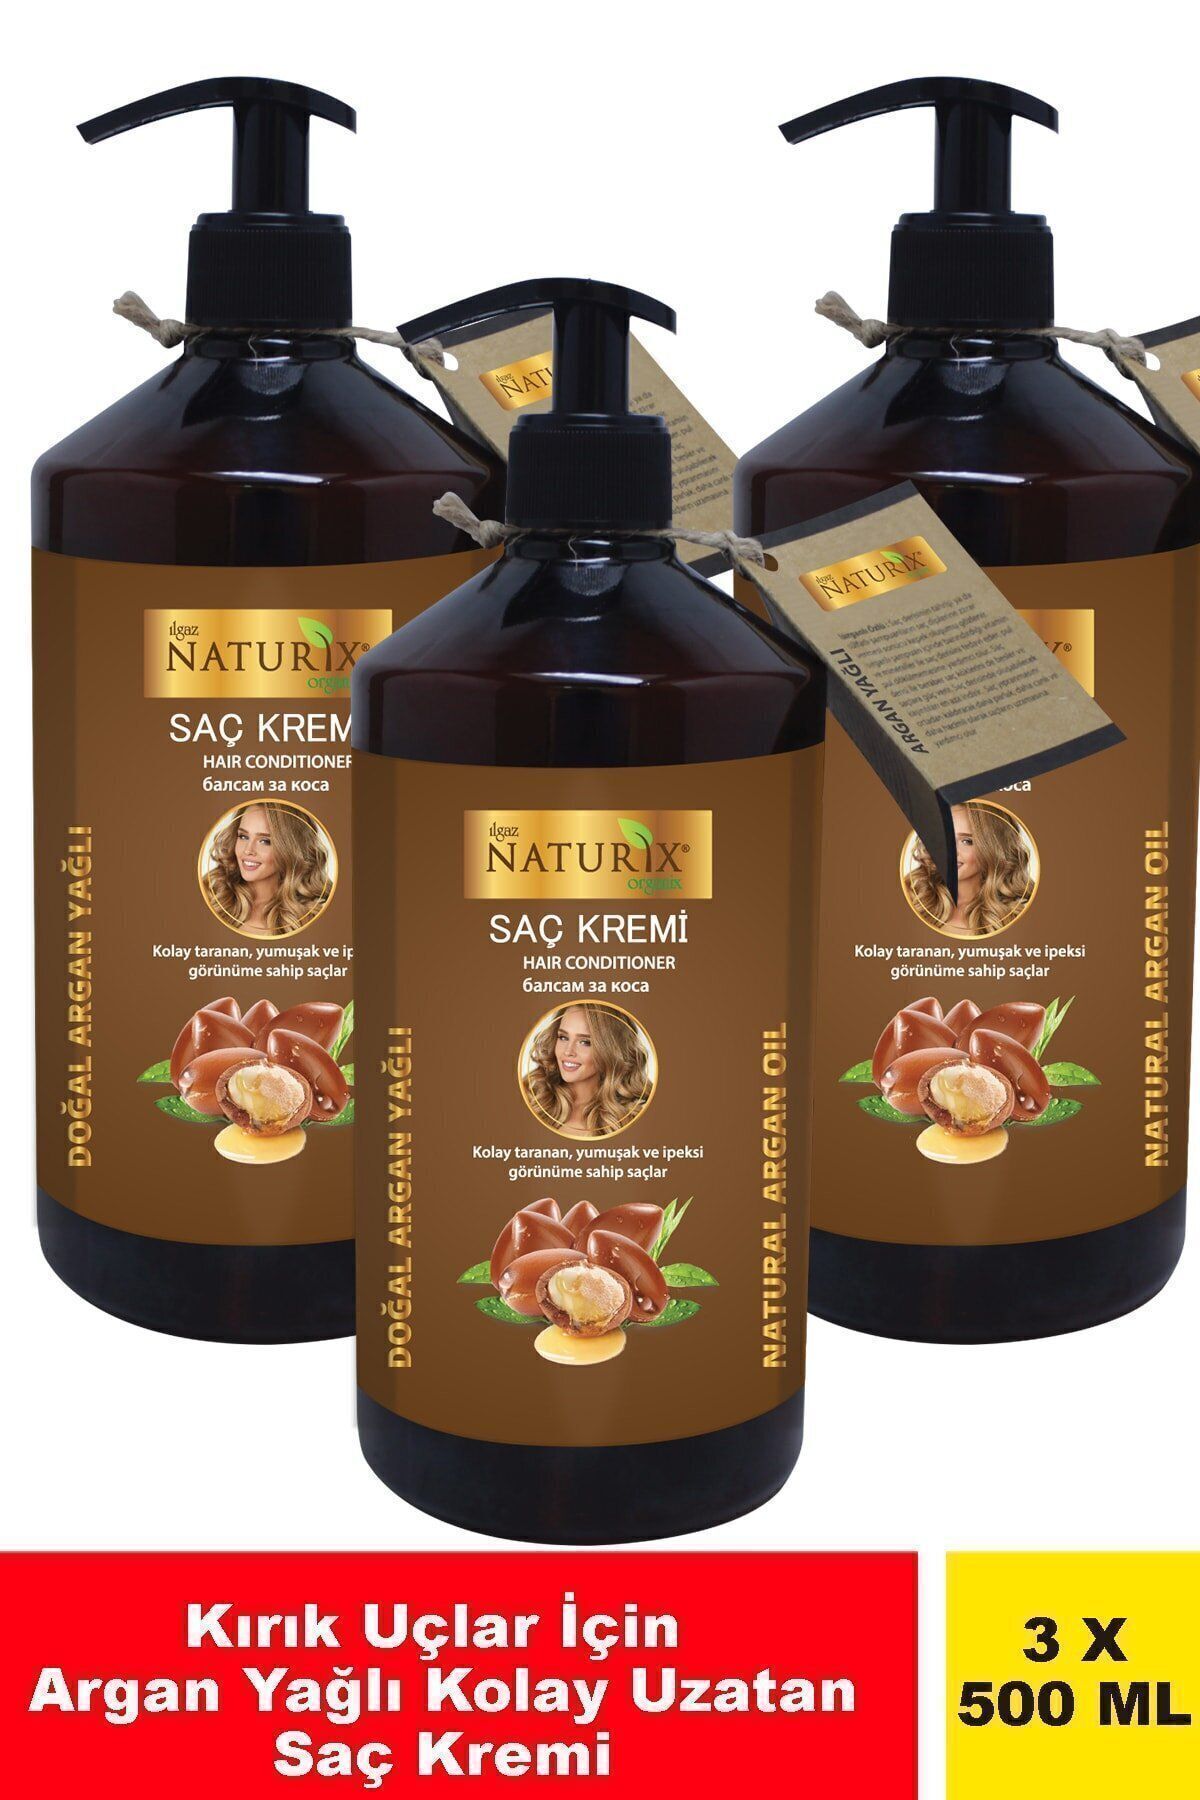 Ilgaz Naturix Organix Bitkisel 3'lü Argan Yağlı 500 ml Saç Bakım Kremi Argan Saç Kremi Onarıcı Bakım Kremi